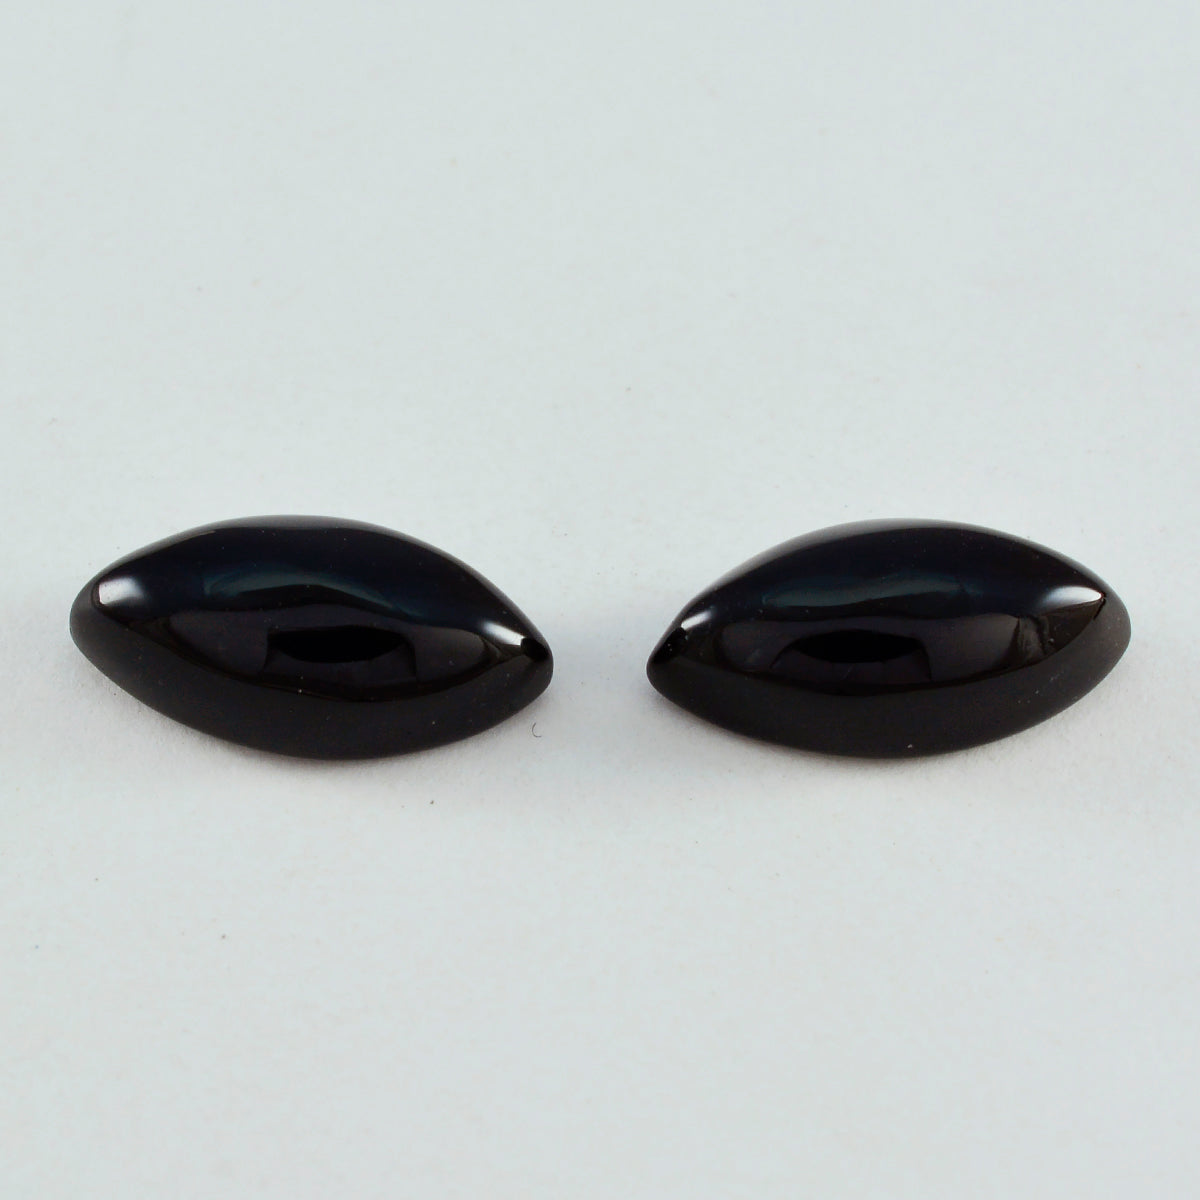 Riyogems 1 pieza cabujón de ónix negro 10x20 mm forma marquesa piedra suelta de calidad atractiva